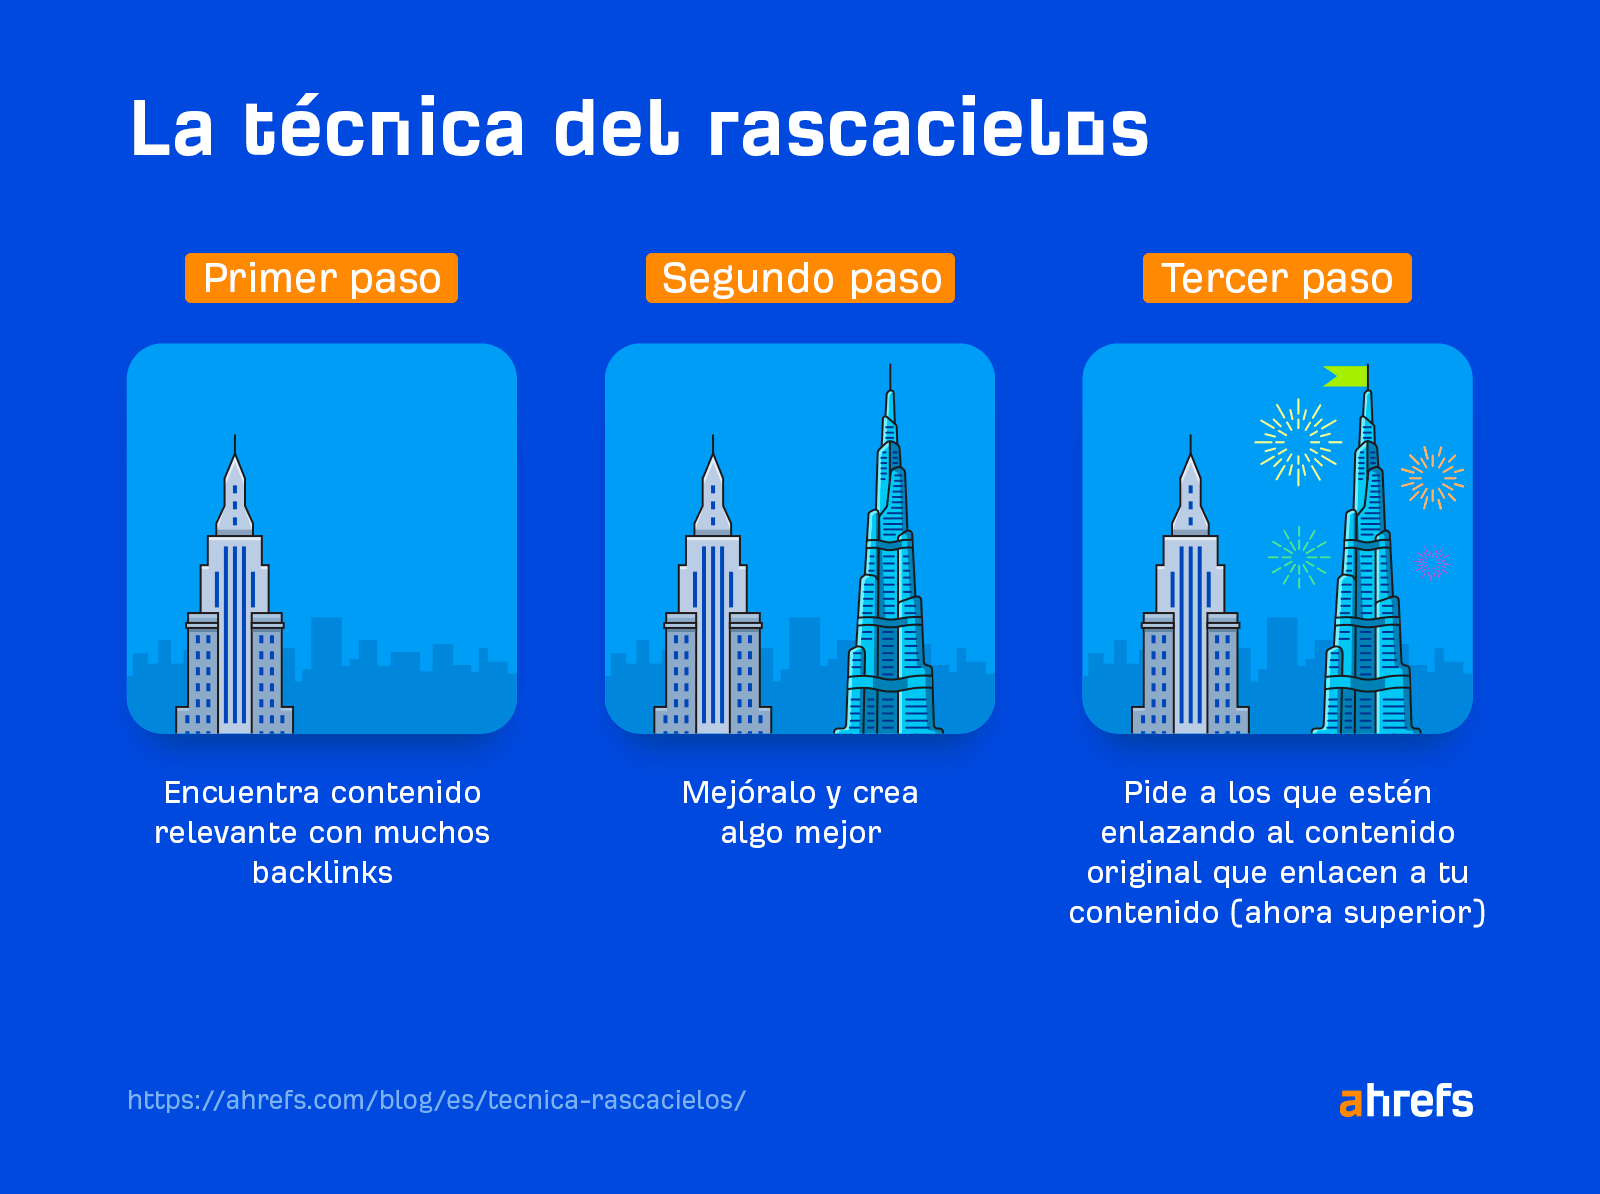 Los tres pasos de la técnica del rascacielos.